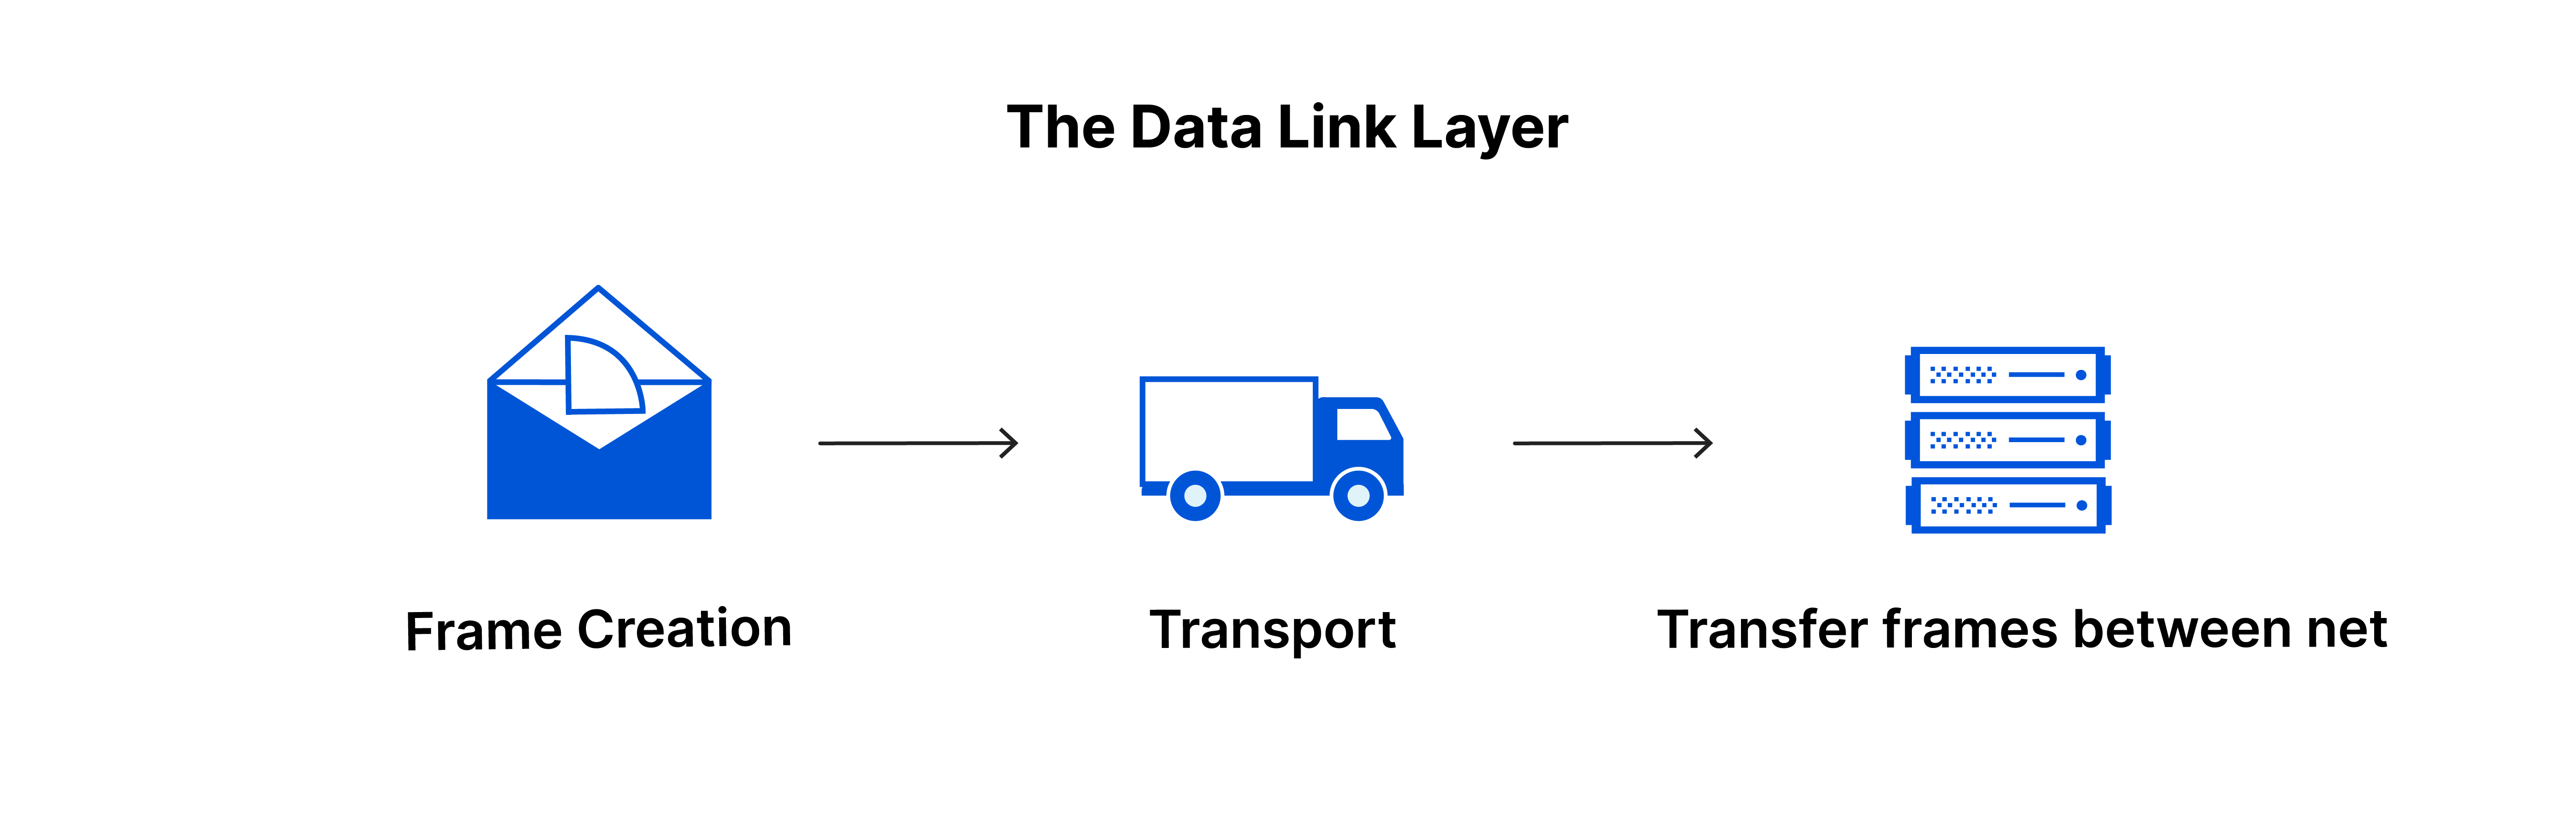 A camada de enlace de dados: criação de estruturas, estruturas enviadas entre redes